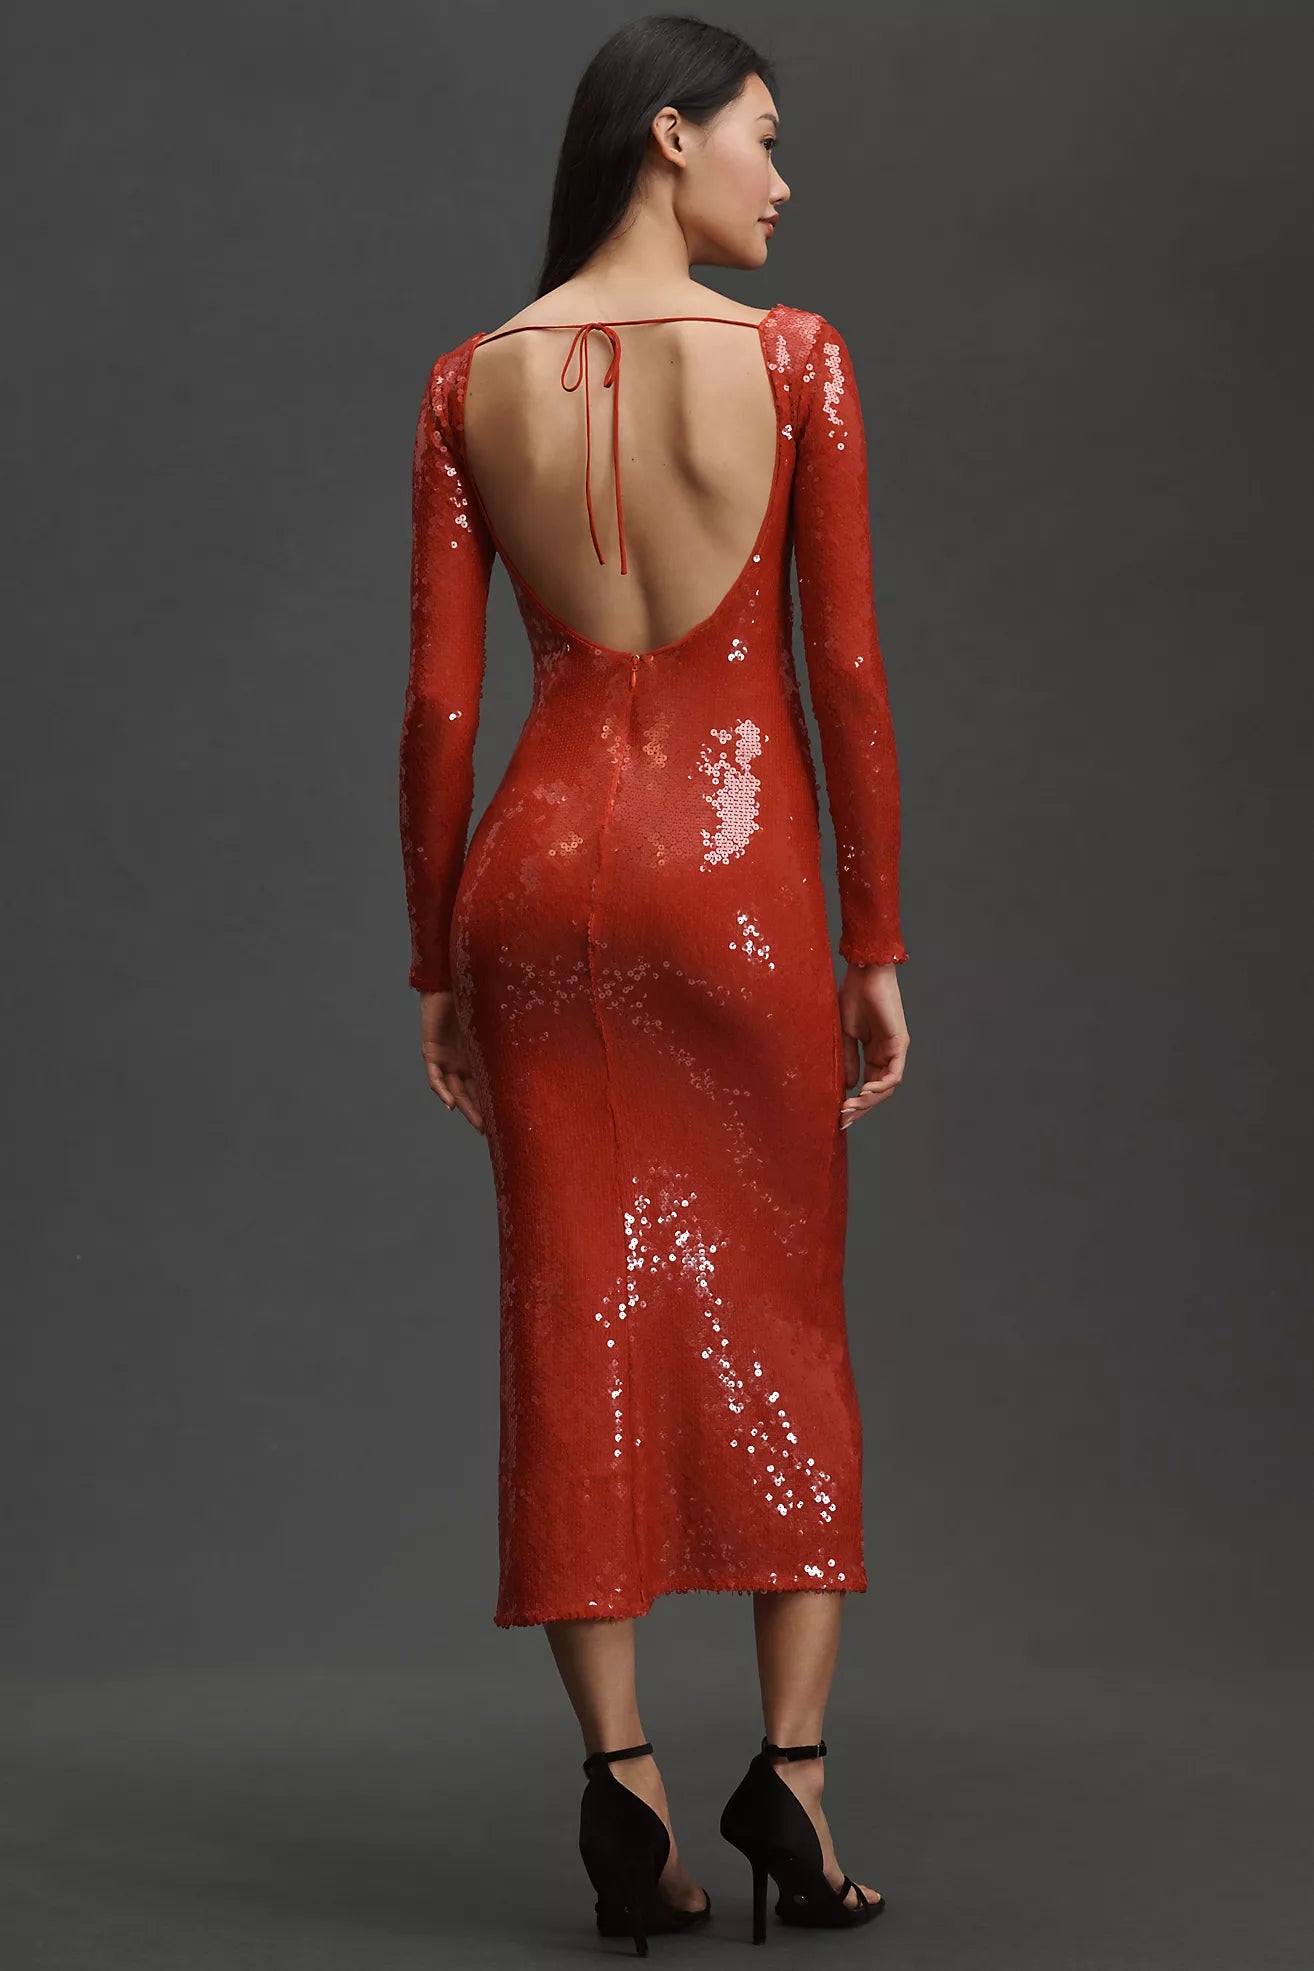 VERONA RED SEQUIN DRESS